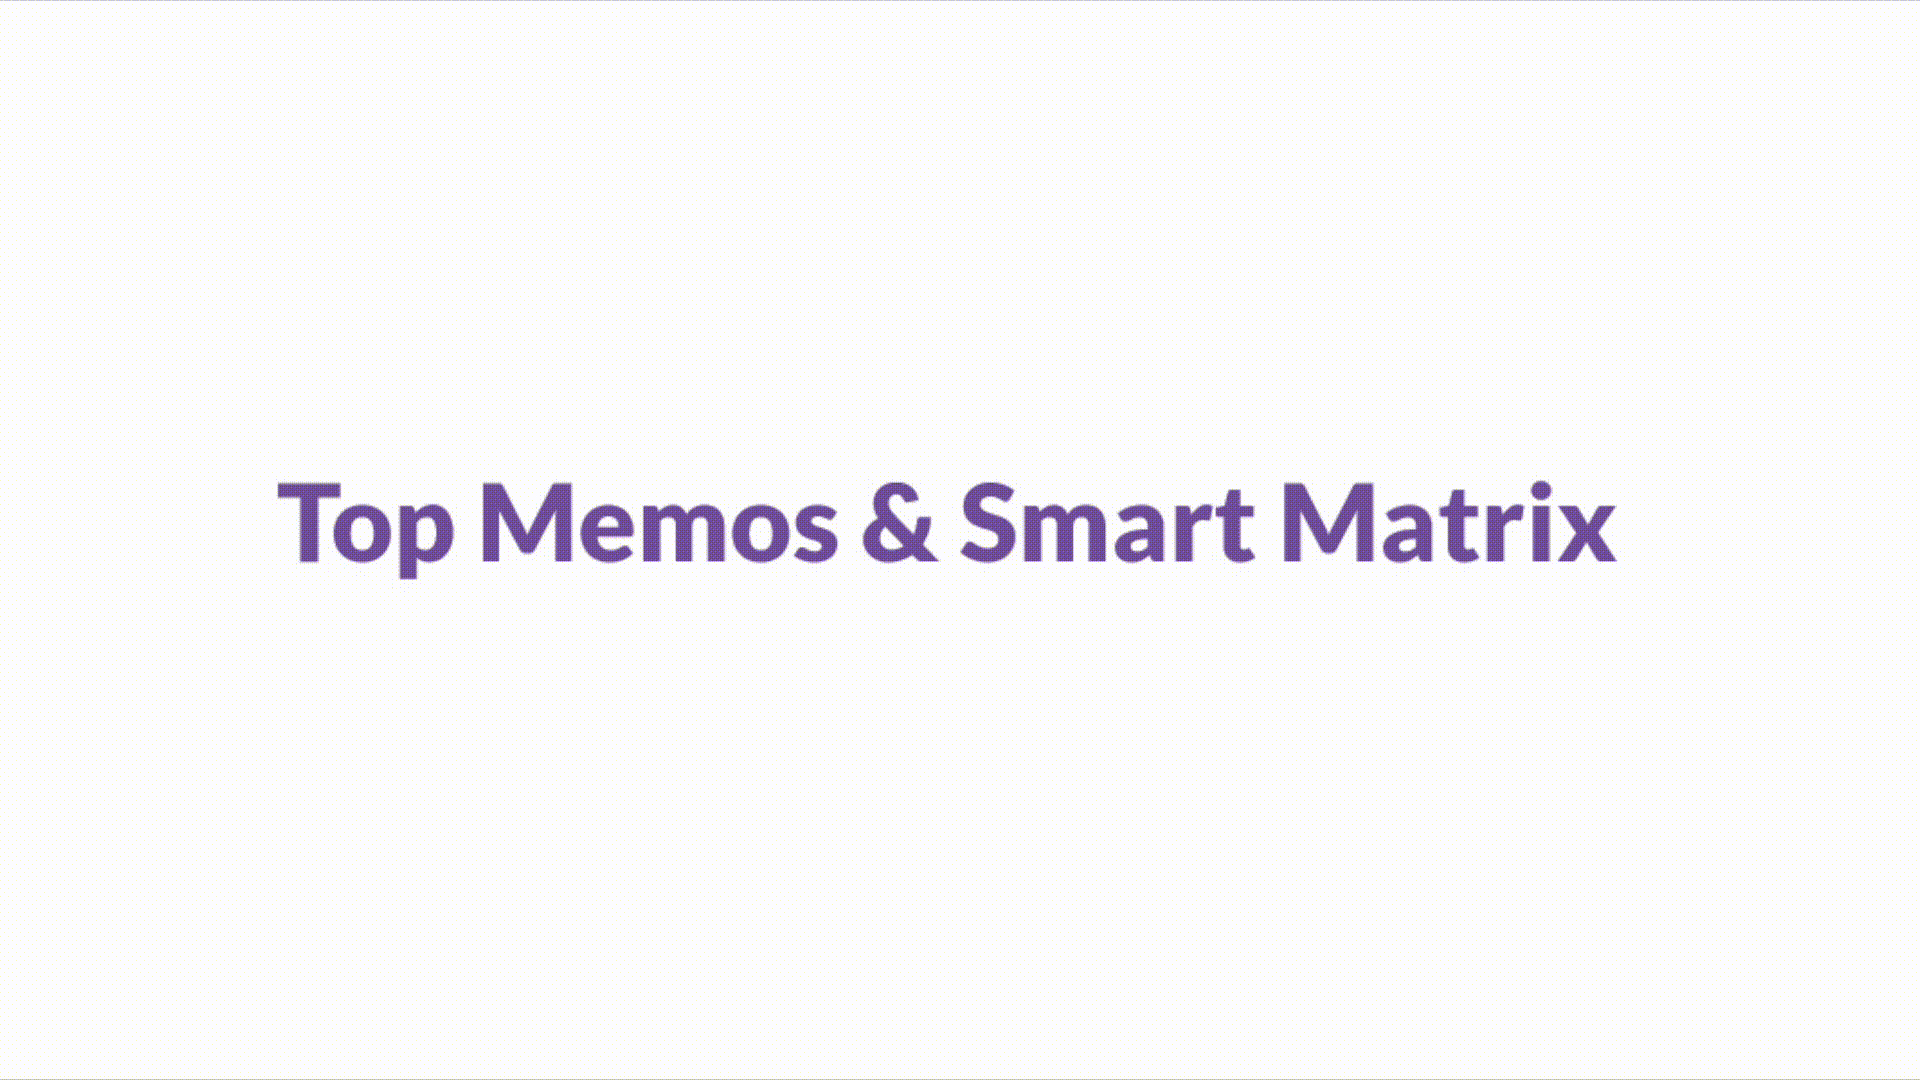 Top Memos and Smart Matrix